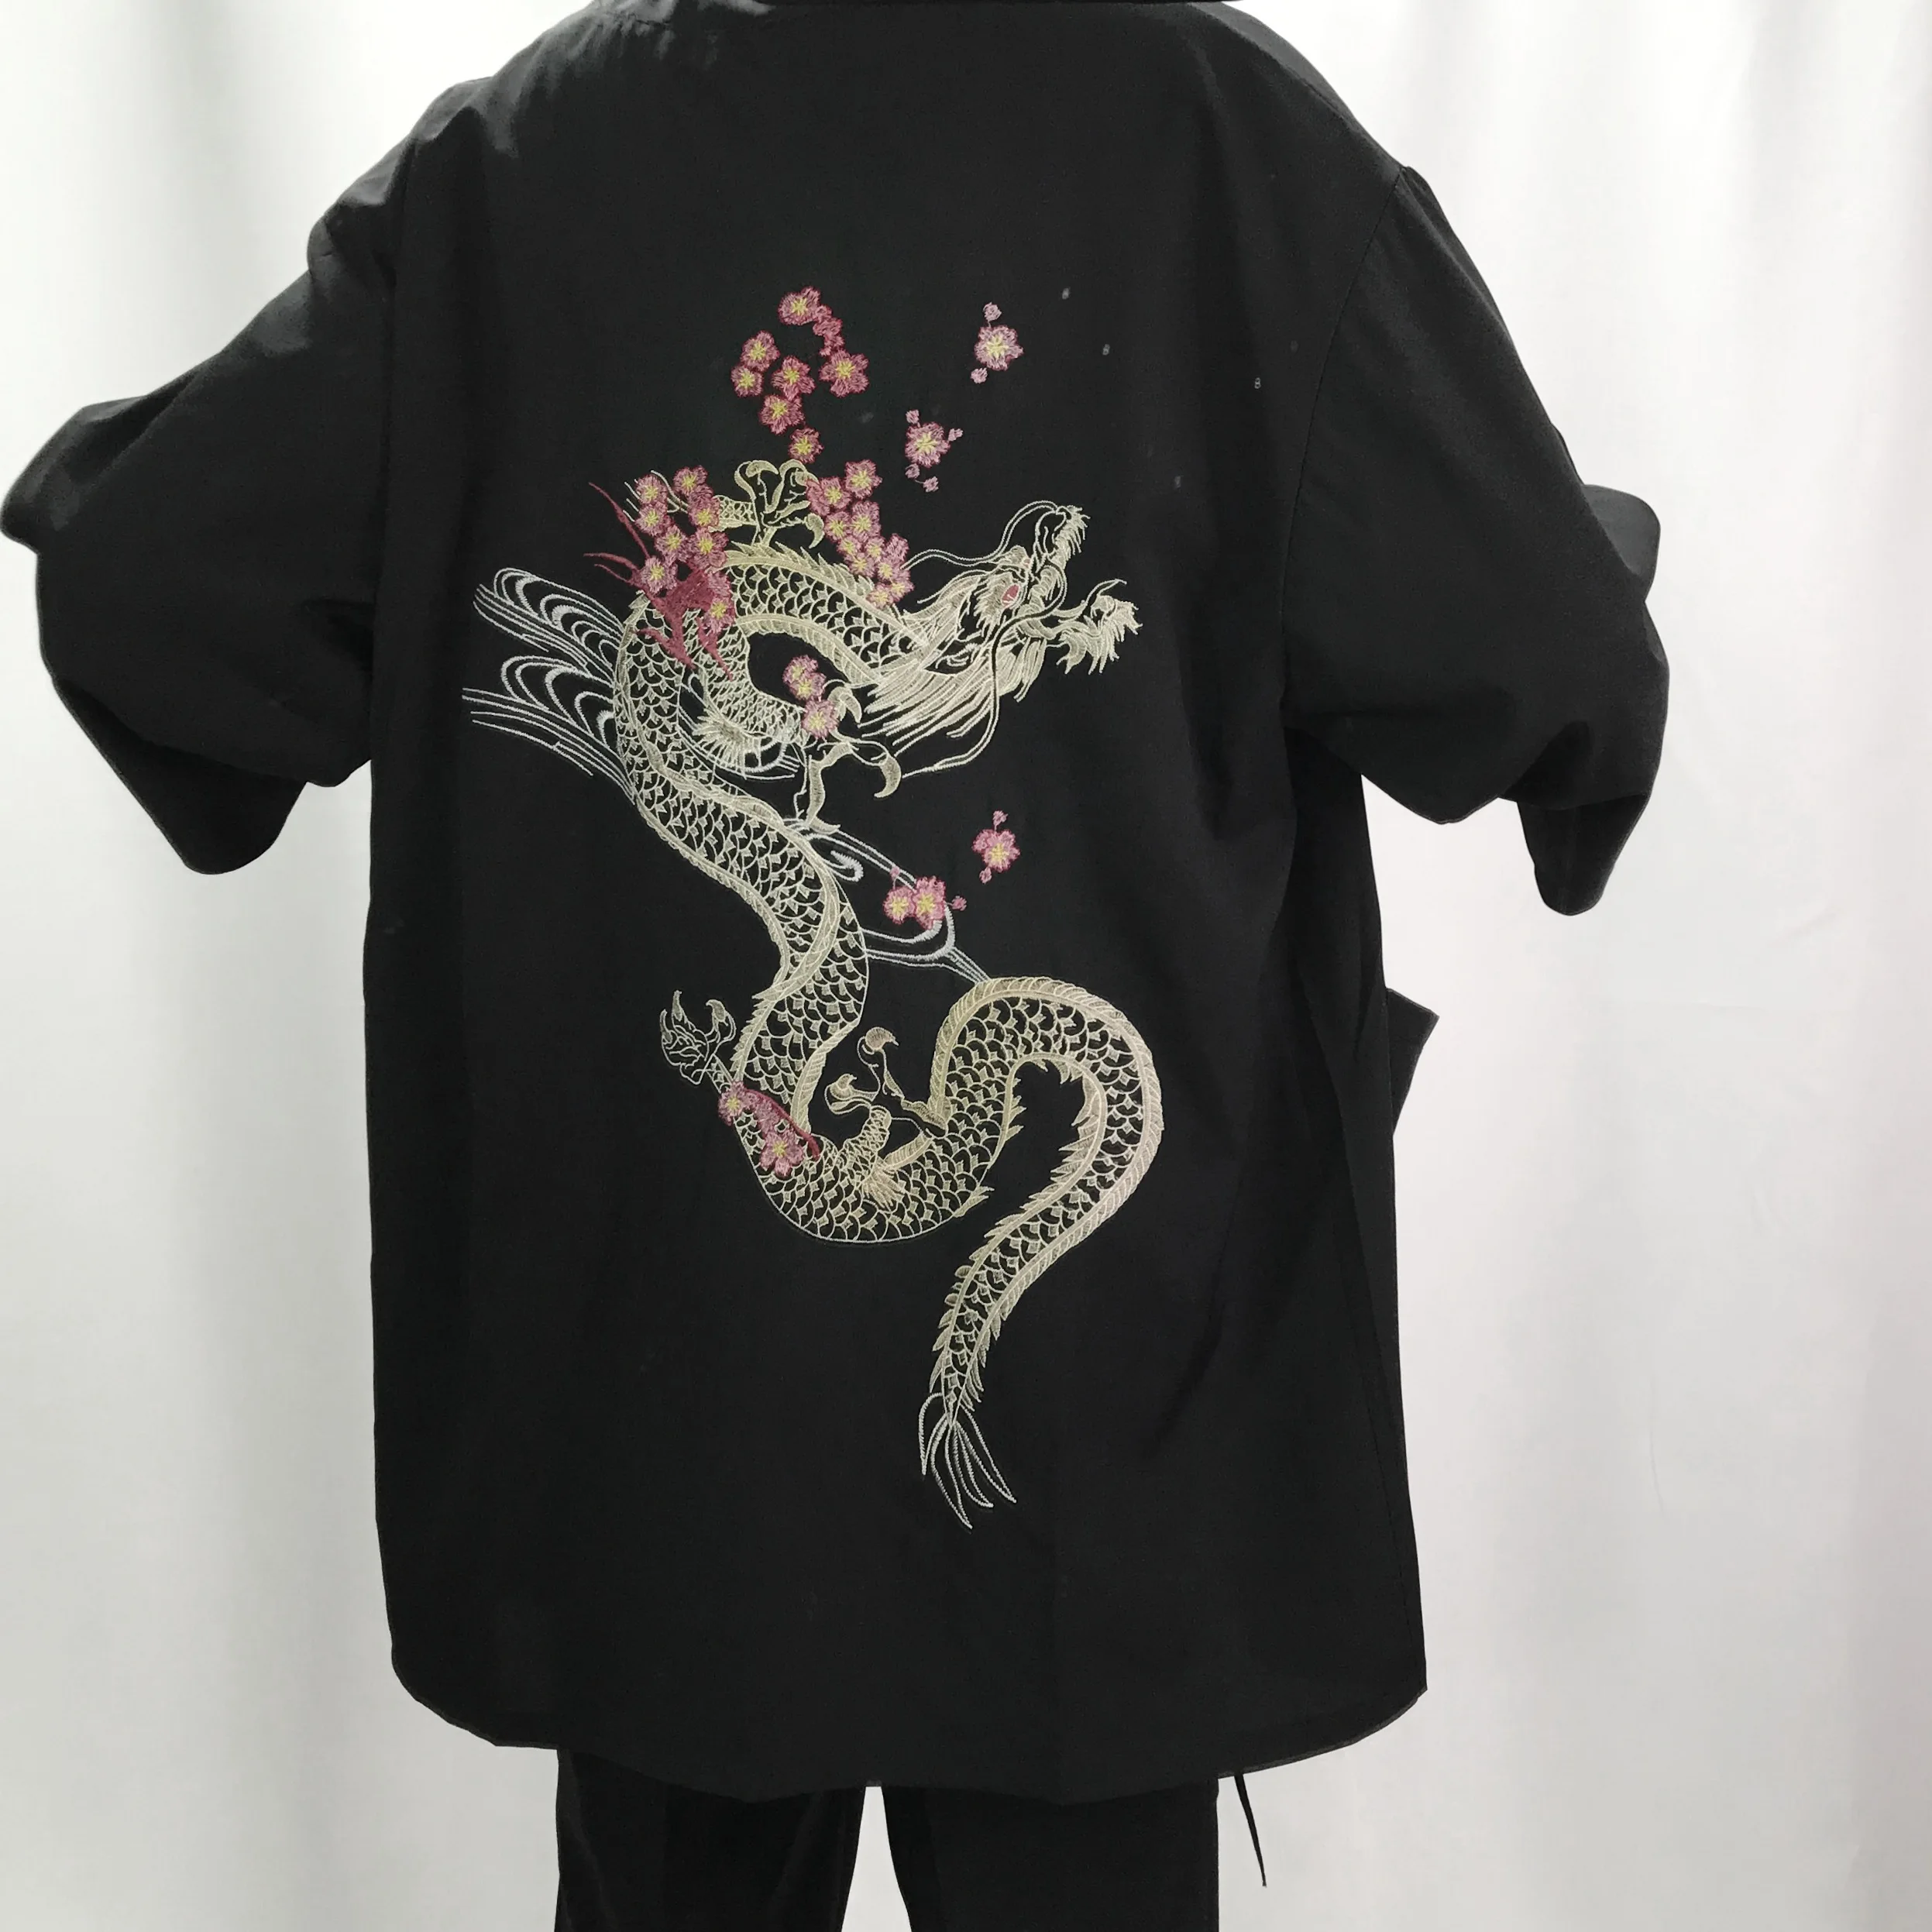 Hombre ropa de kimono chaquetas de los hombres ropa de cama de algodón chaquetas irregular kimono bordado chino tops cardigan hanfu indio outwear 1